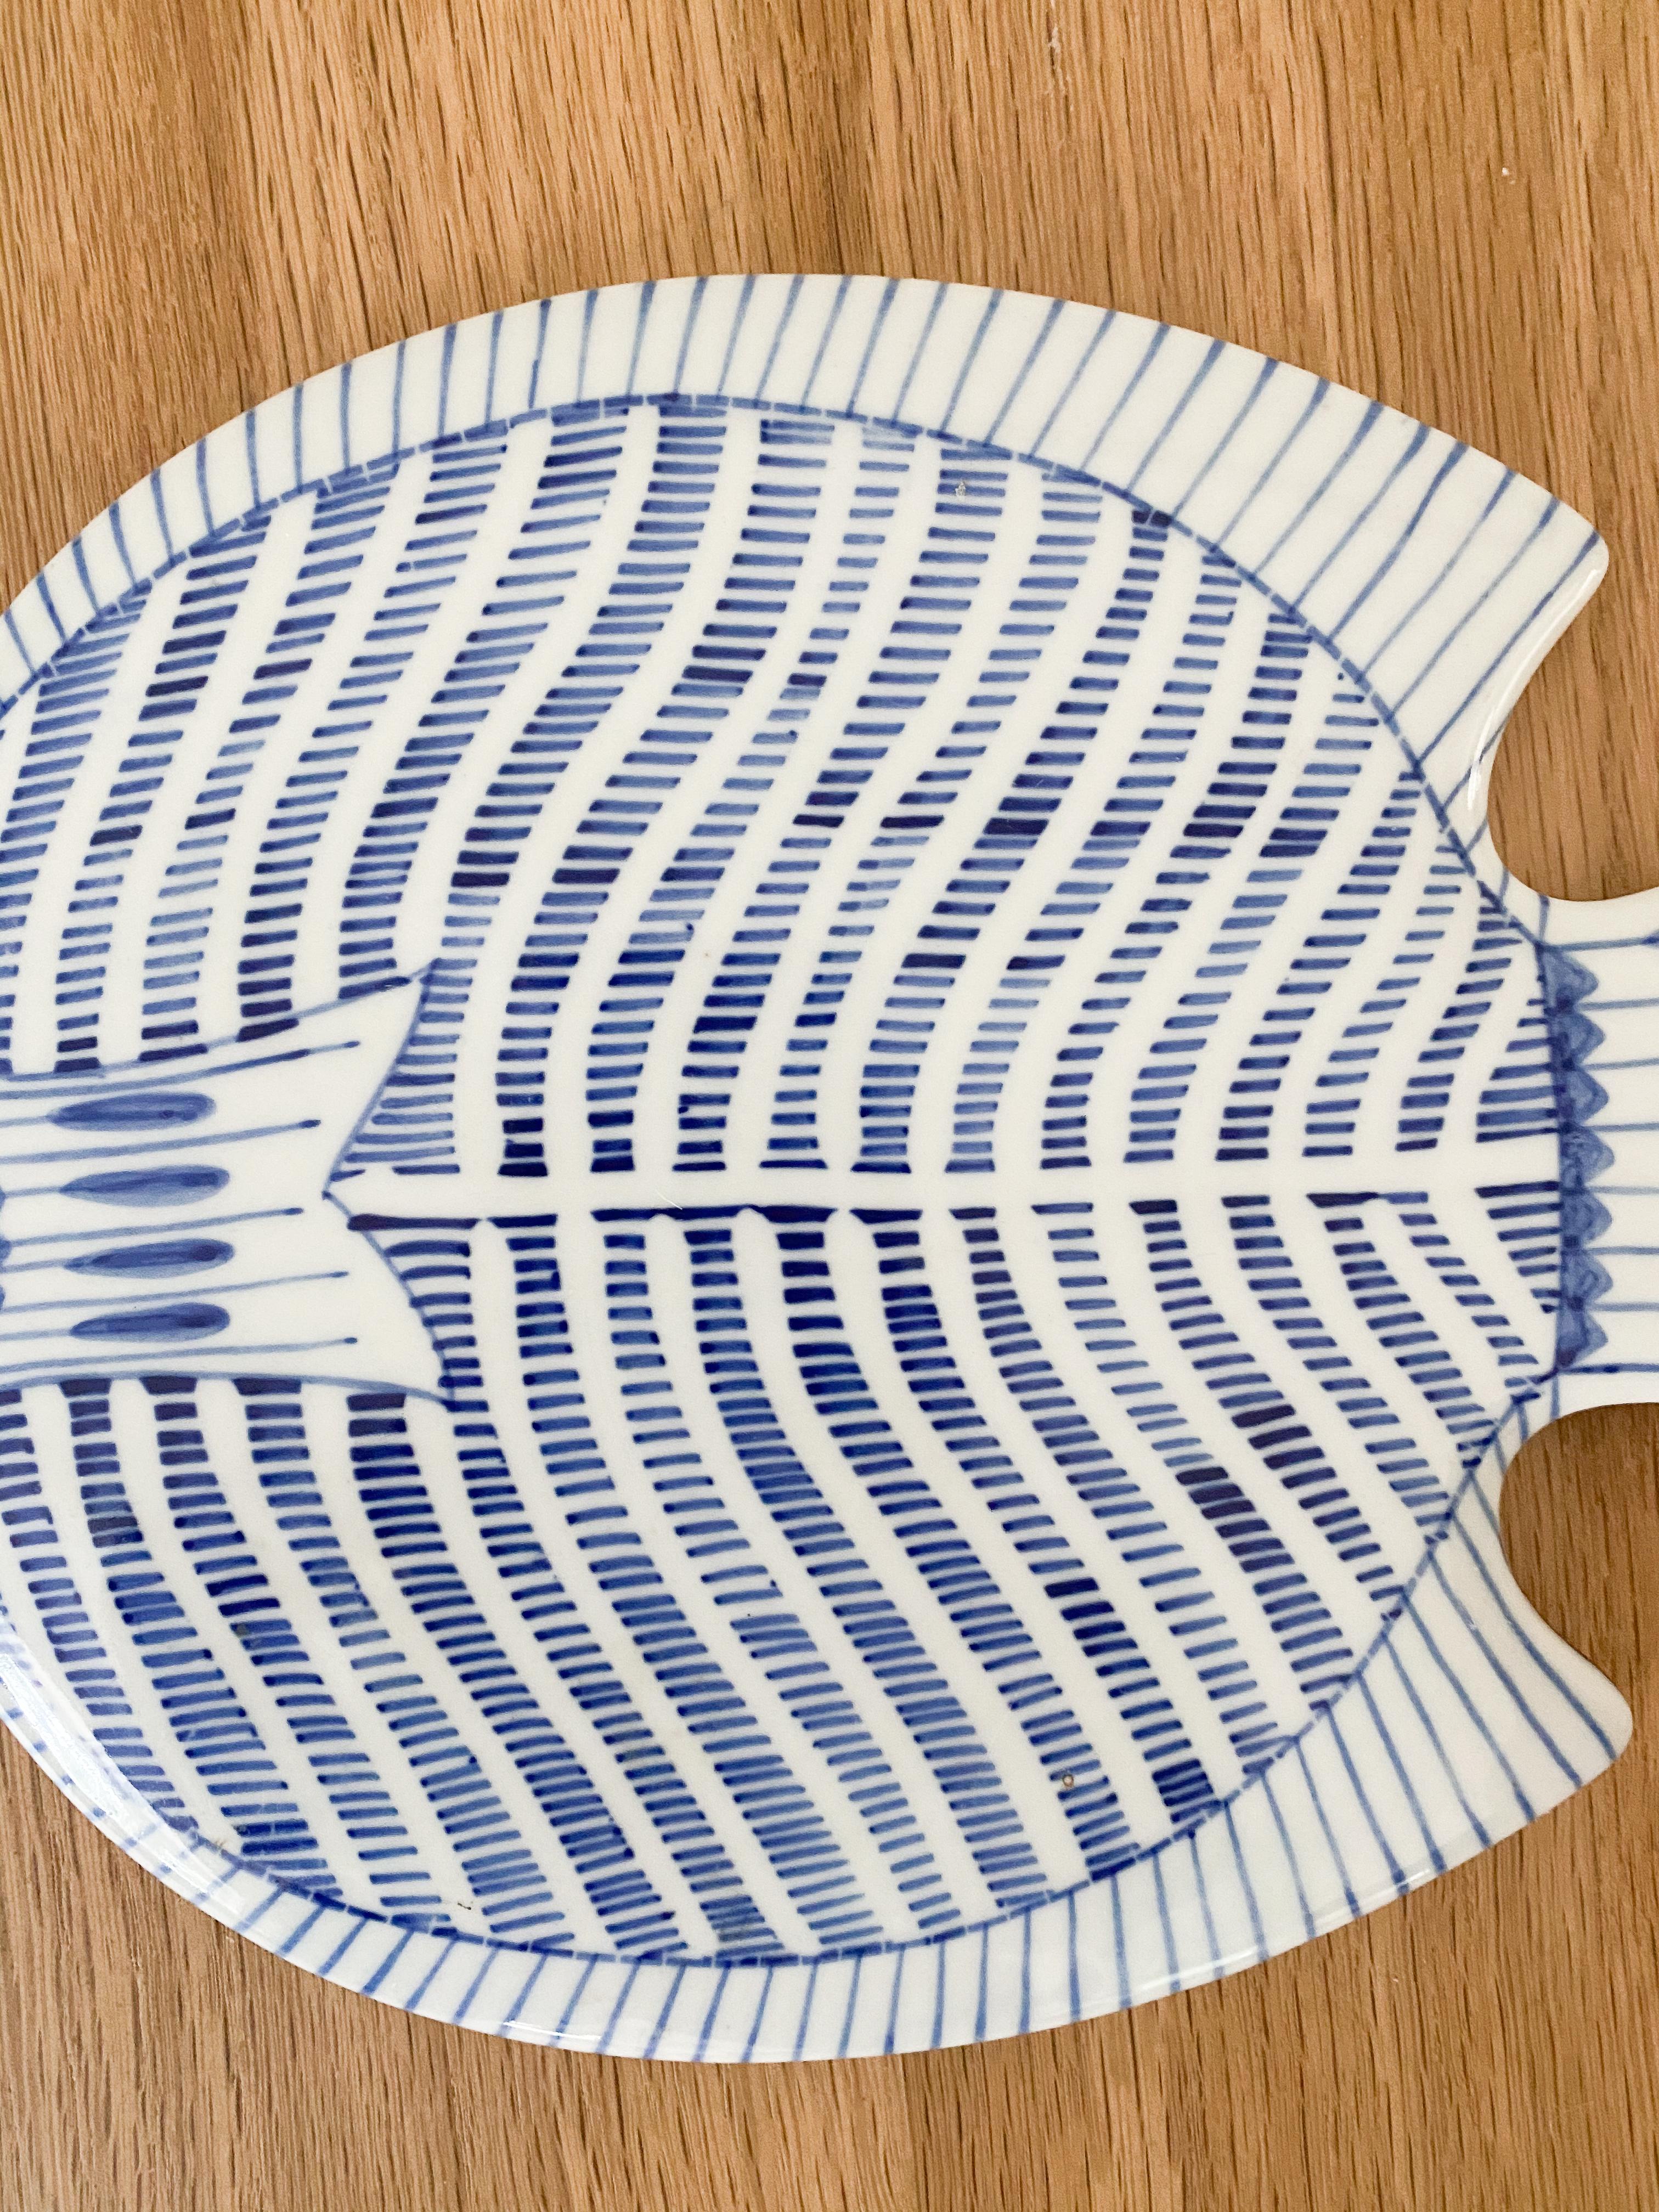 Pair of Ceramic Fish Plates 2